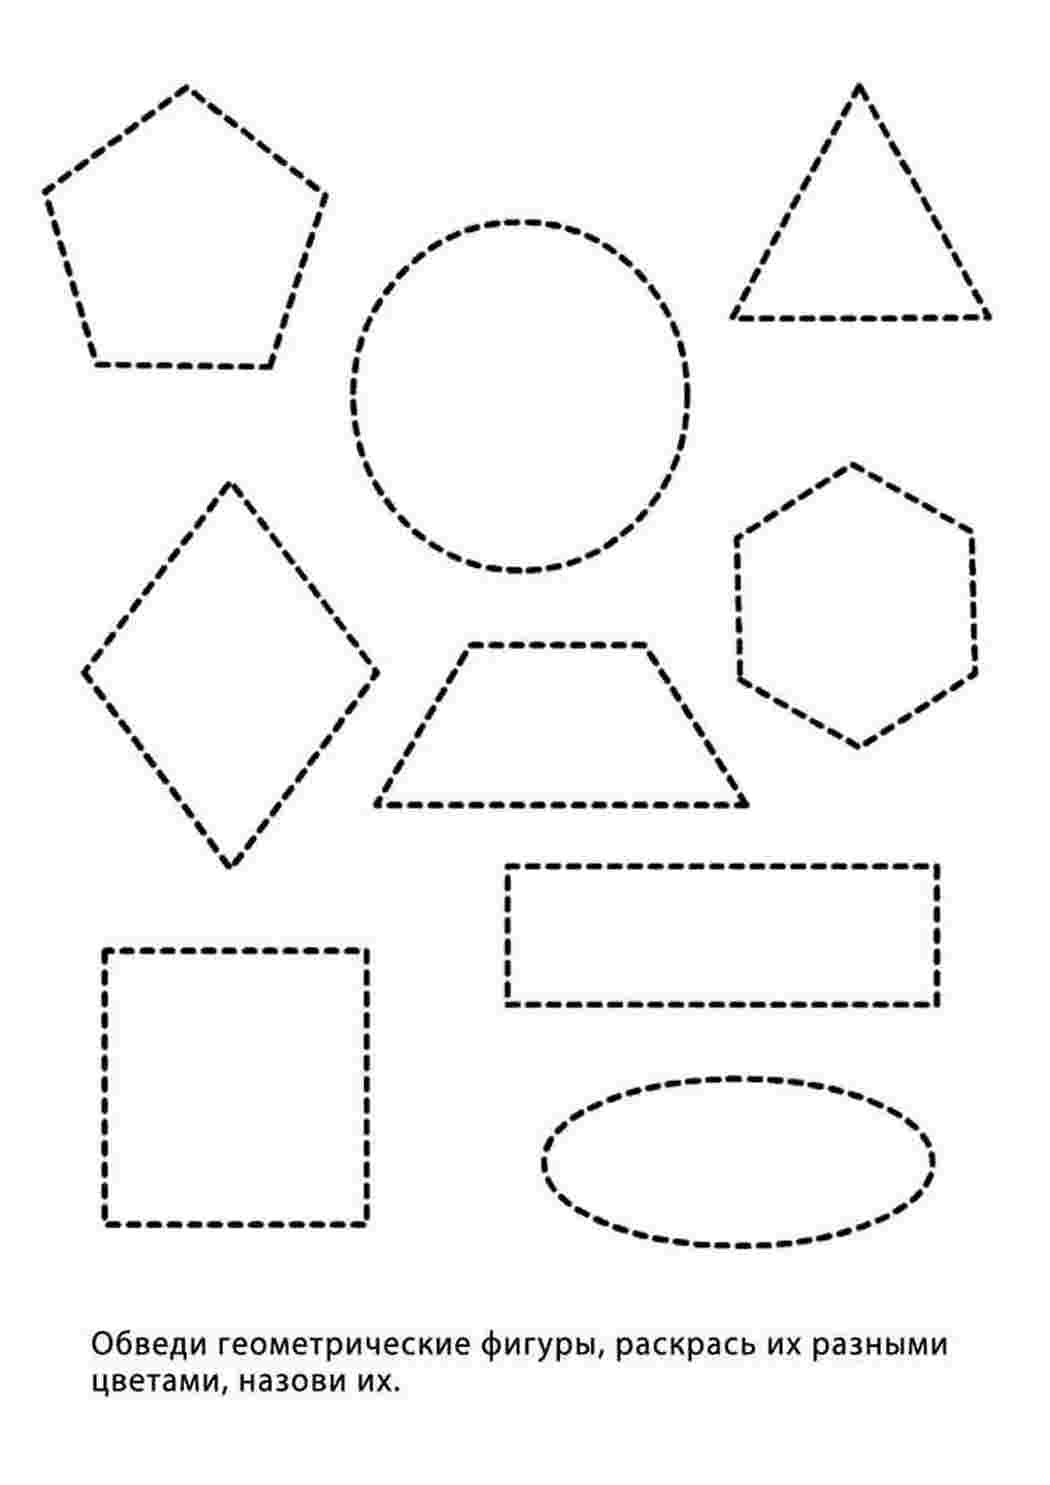 Изучаем фигуры геометрии, цвета и формы с помощью наборов геометрических фигурок